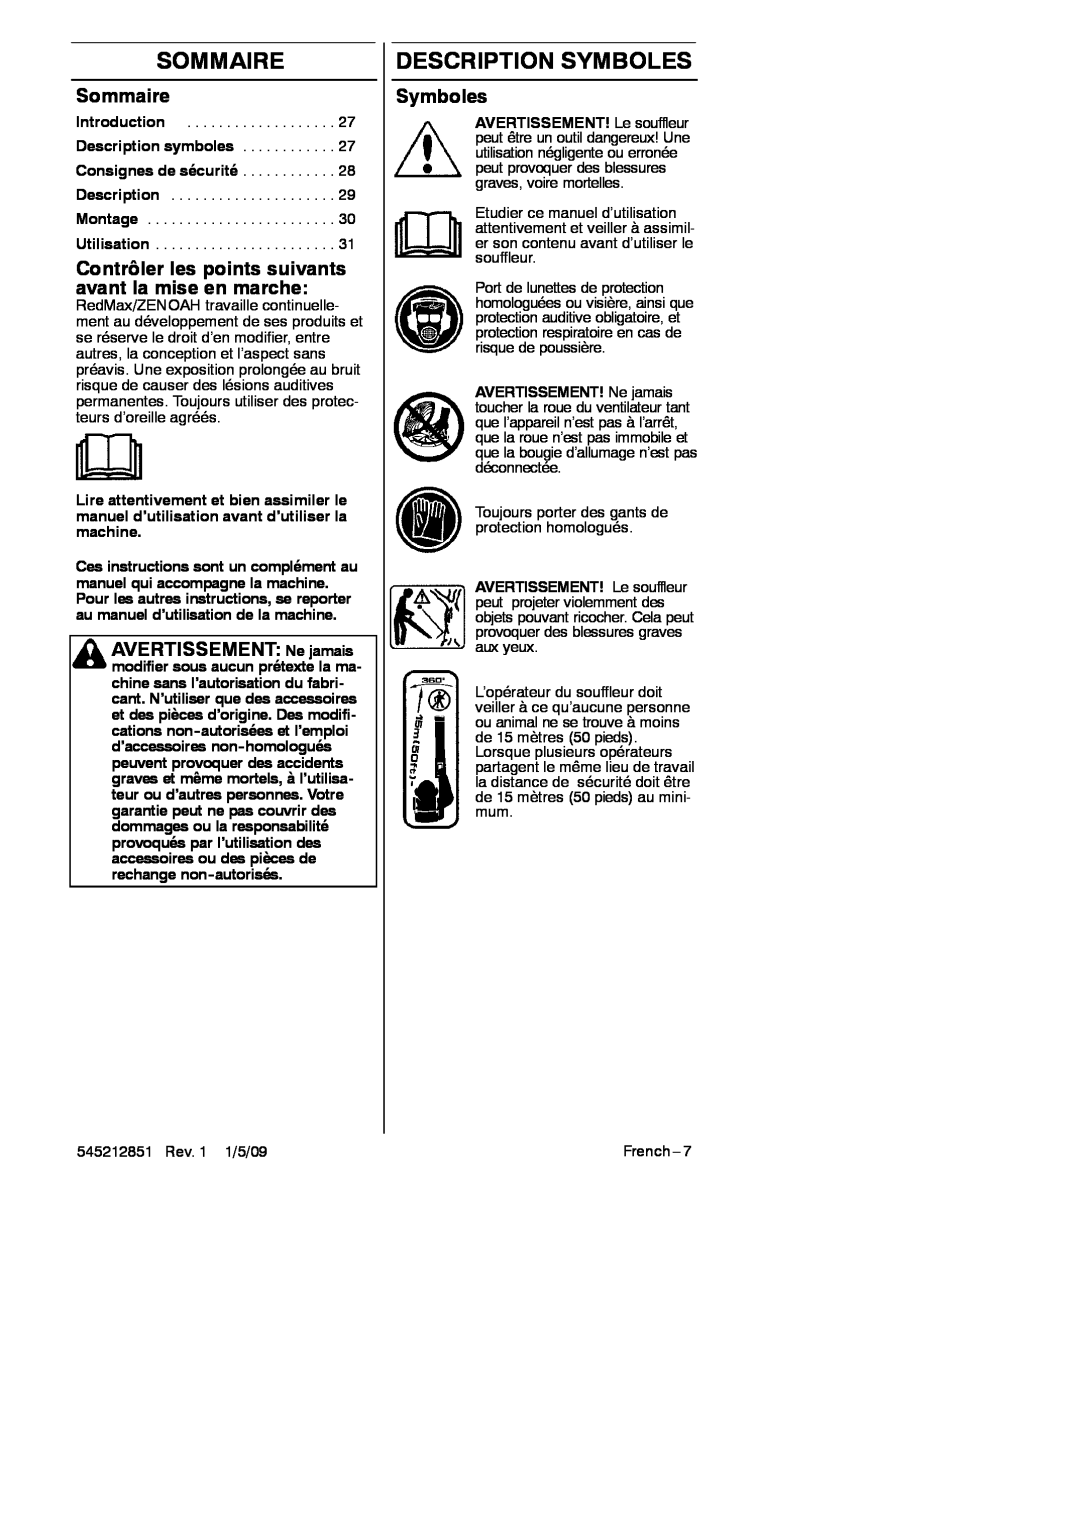 RedMax GK-280 manual Sommaire, Description Symboles, Contrôler les points suivants avant la mise en marche 